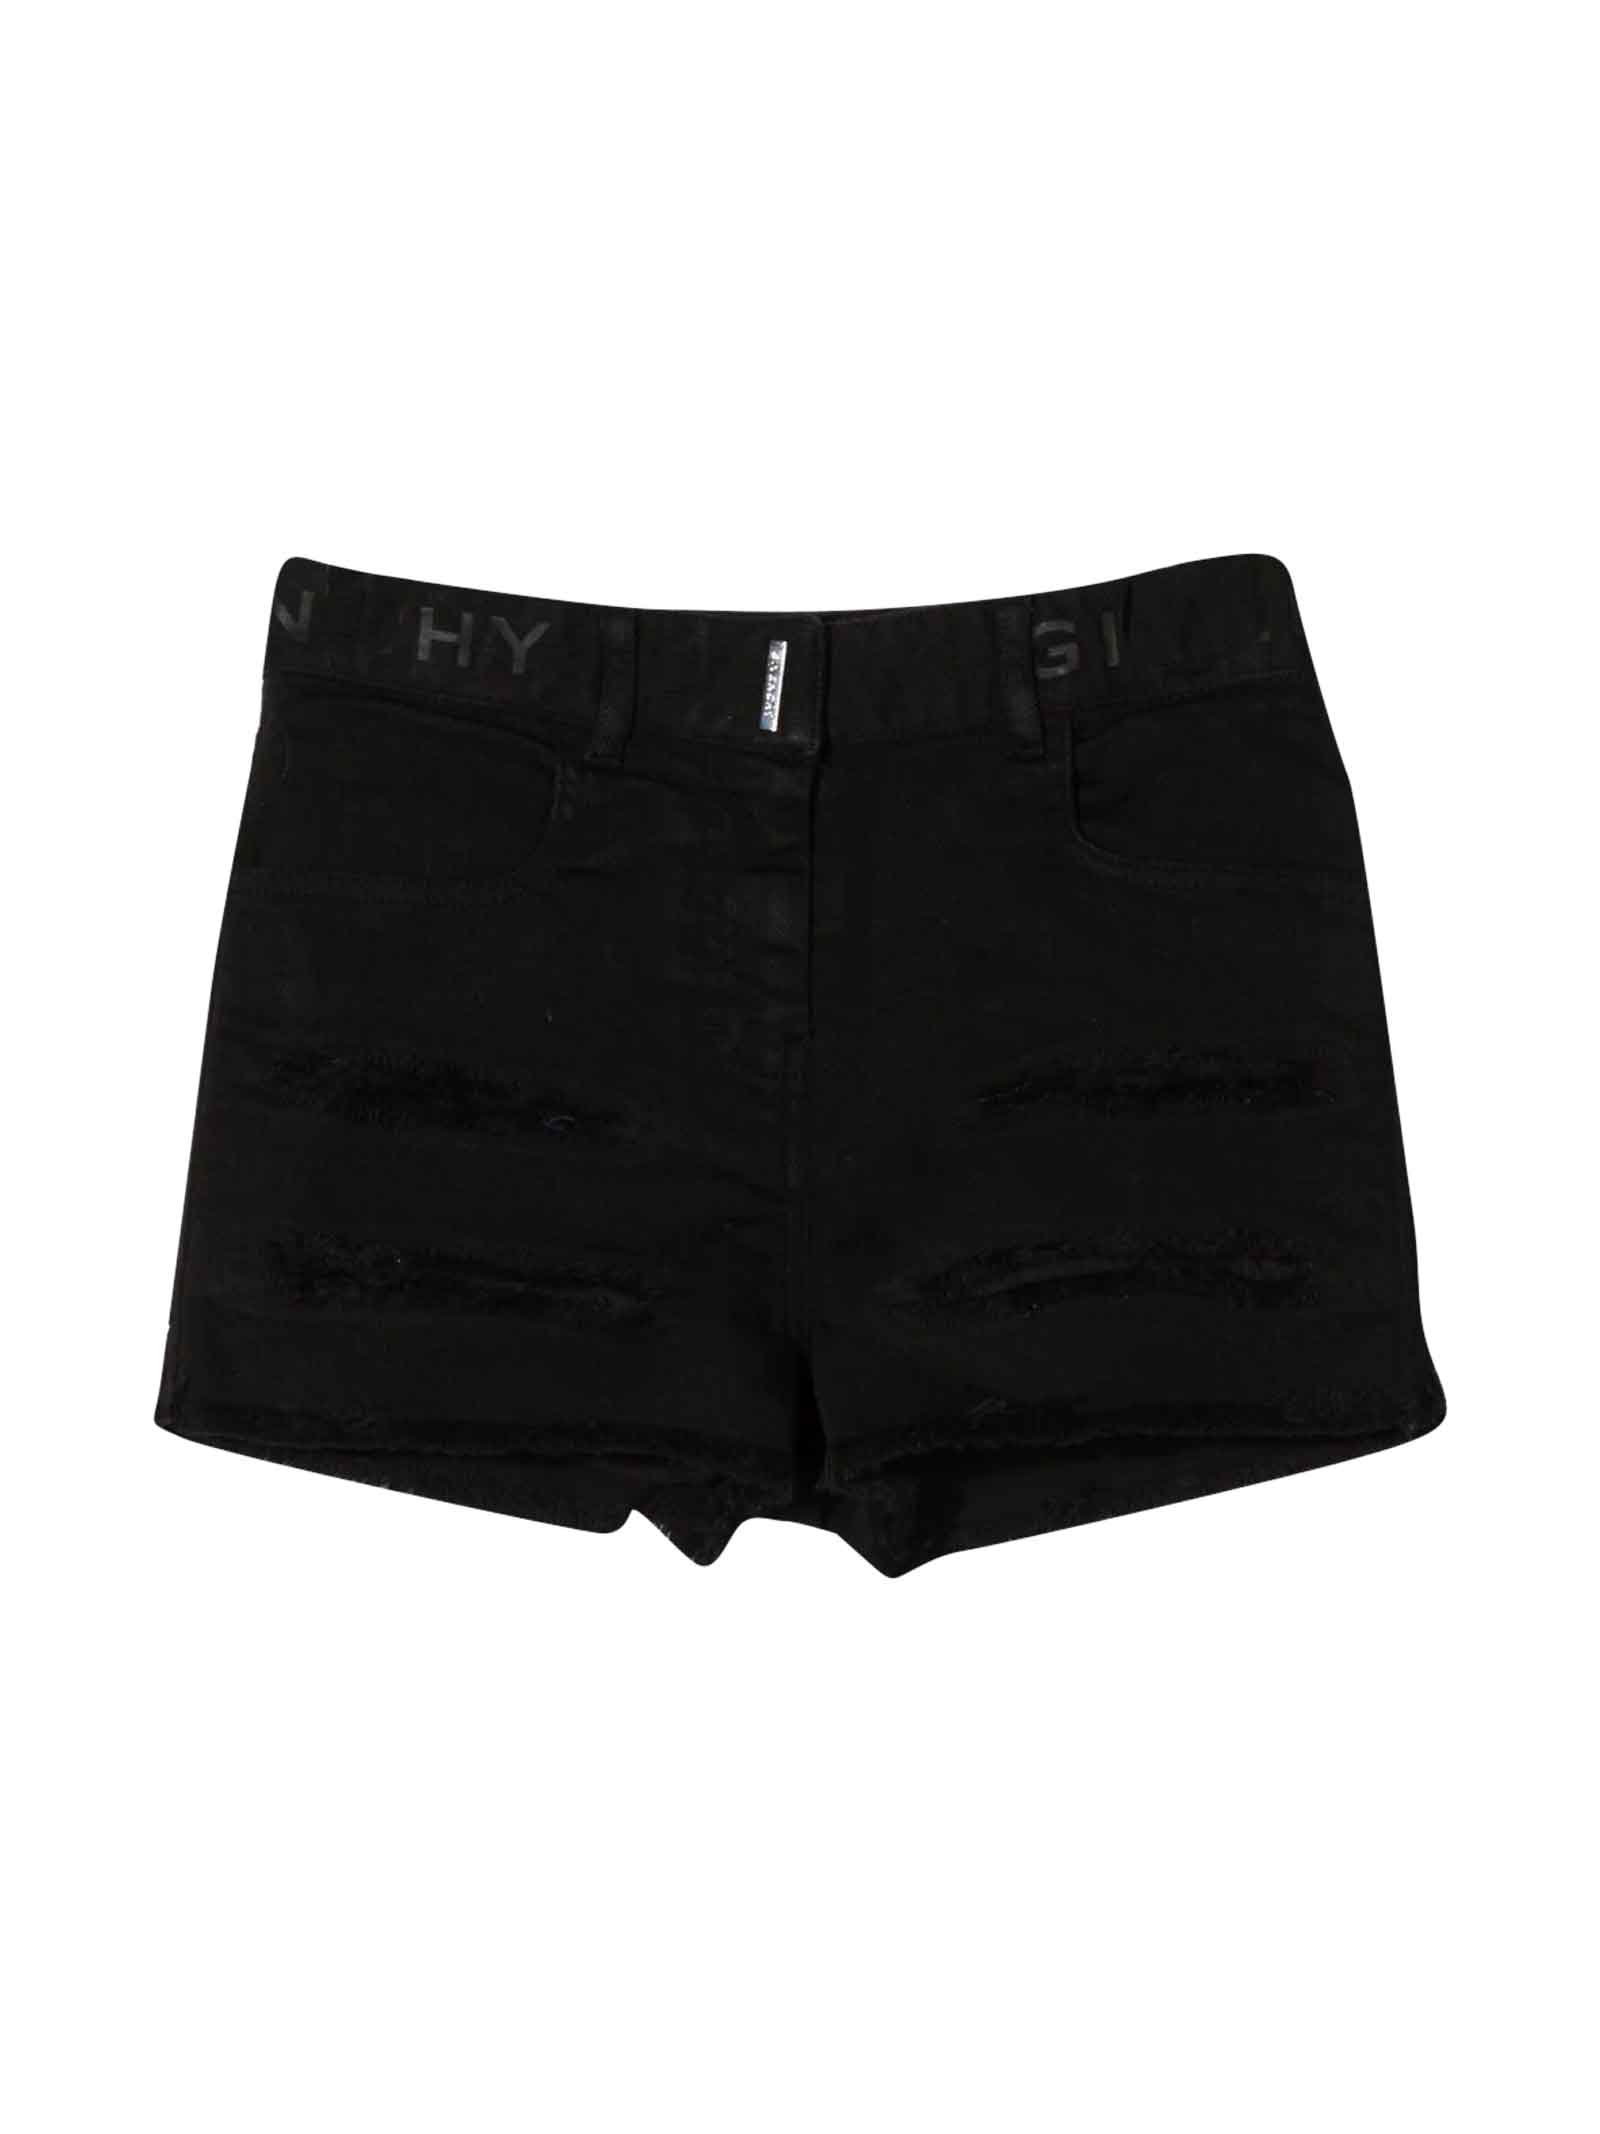 Givenchy Girl Black Shorts